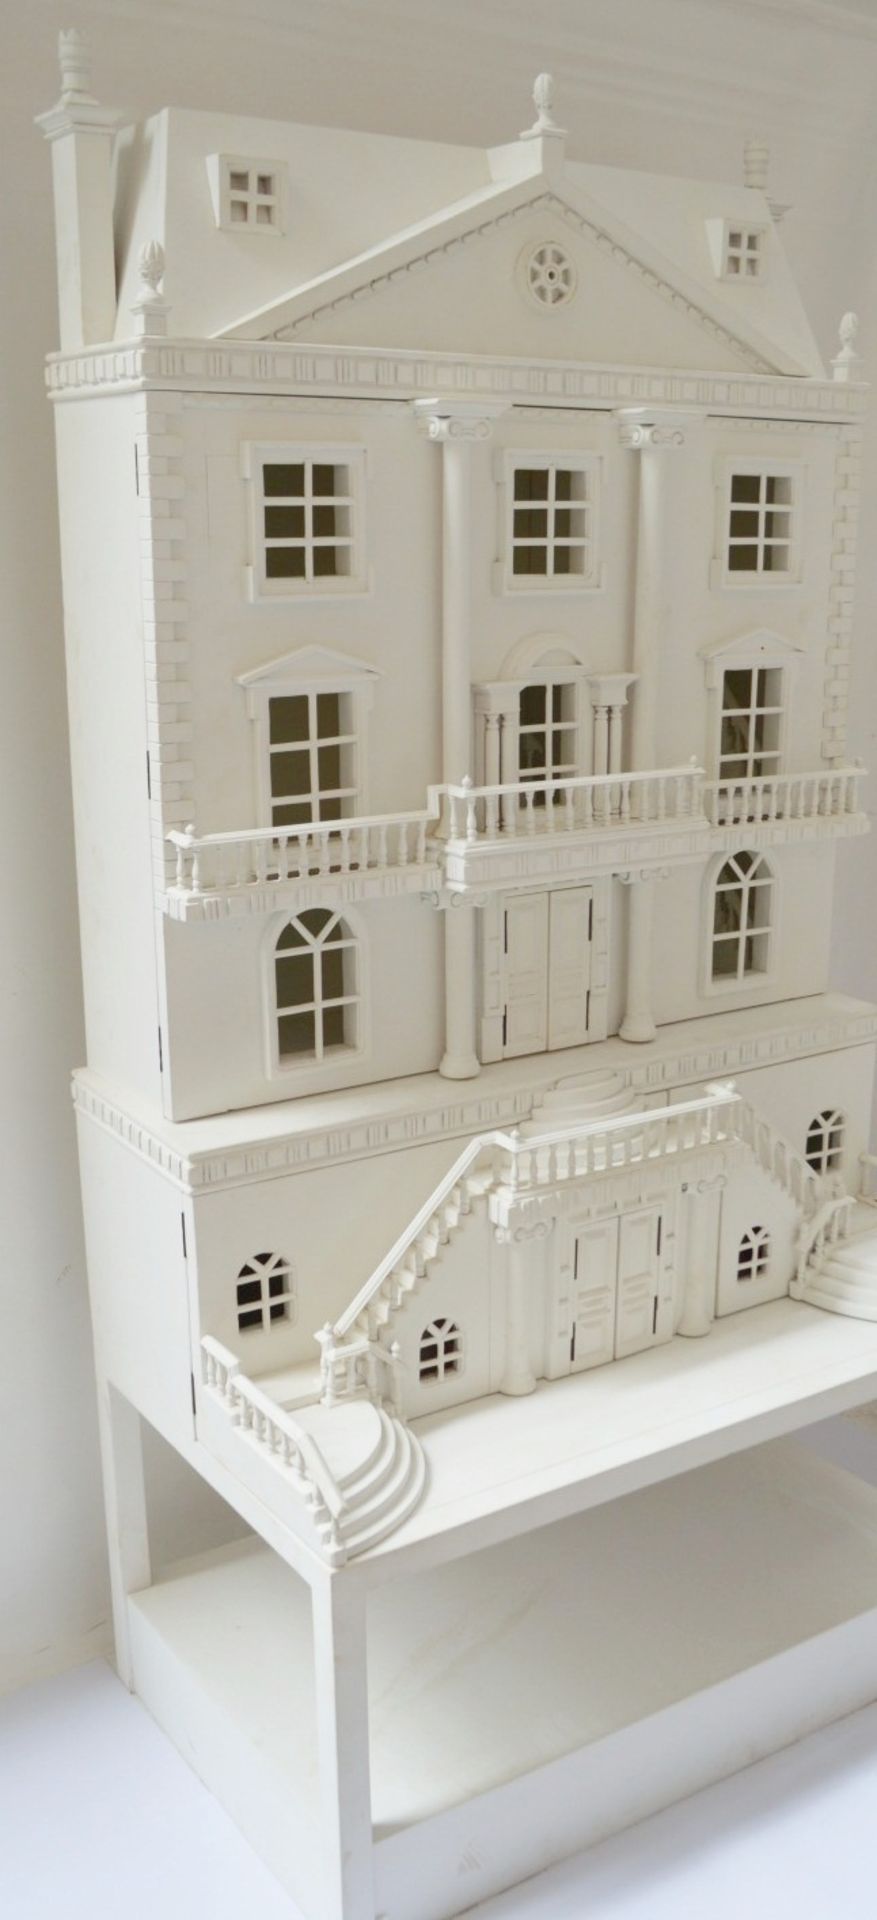 1 x Impressive Bespoke Hand Crafted Wooden Dolls House In White - Bild 4 aus 19